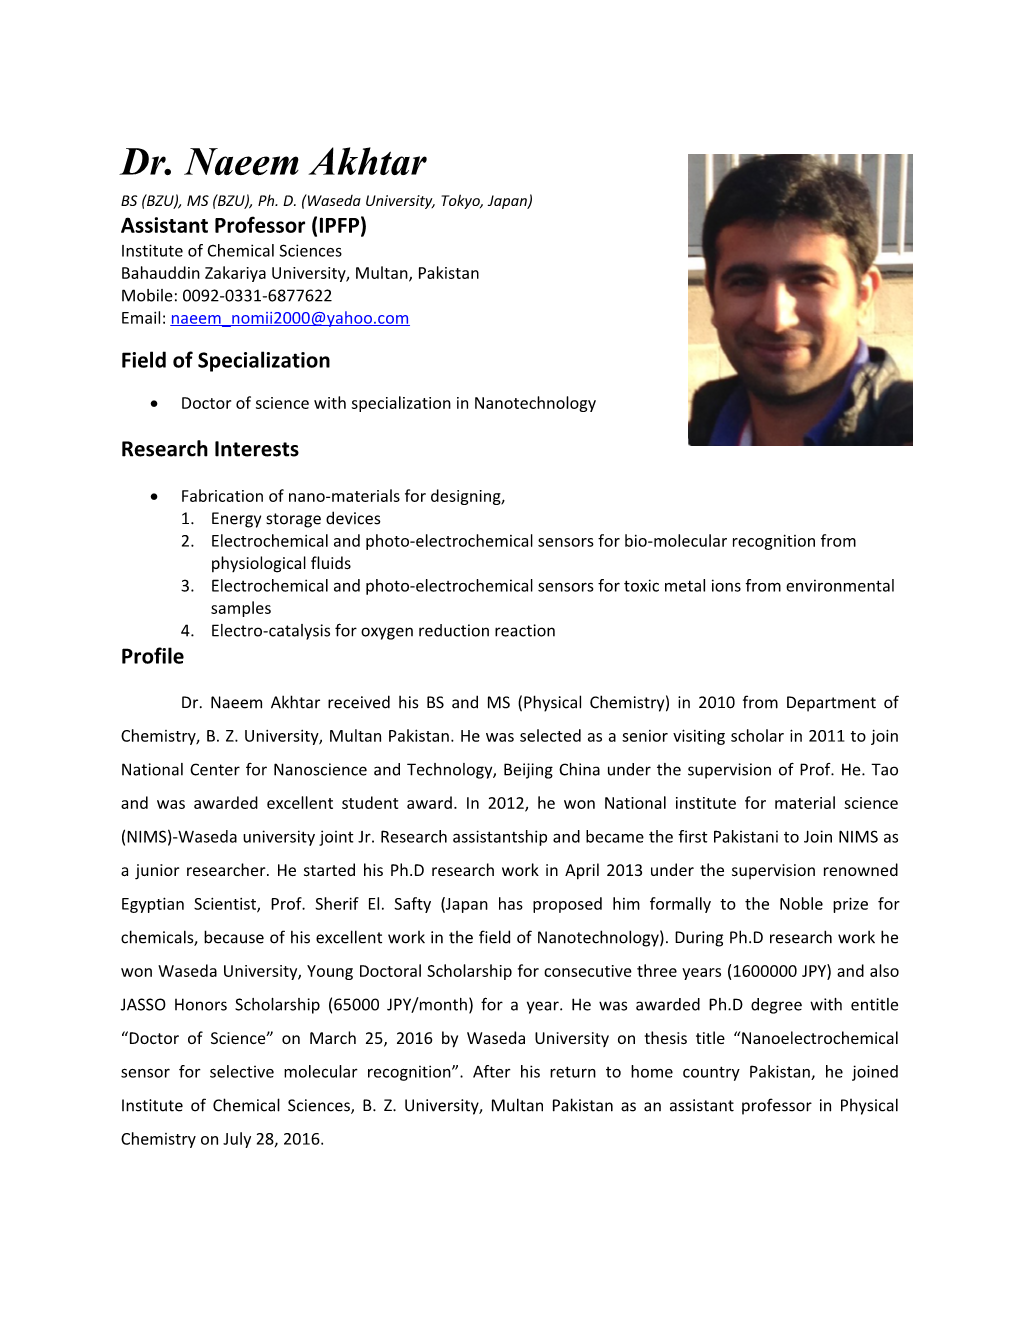 Dr. Naeem Akhtar